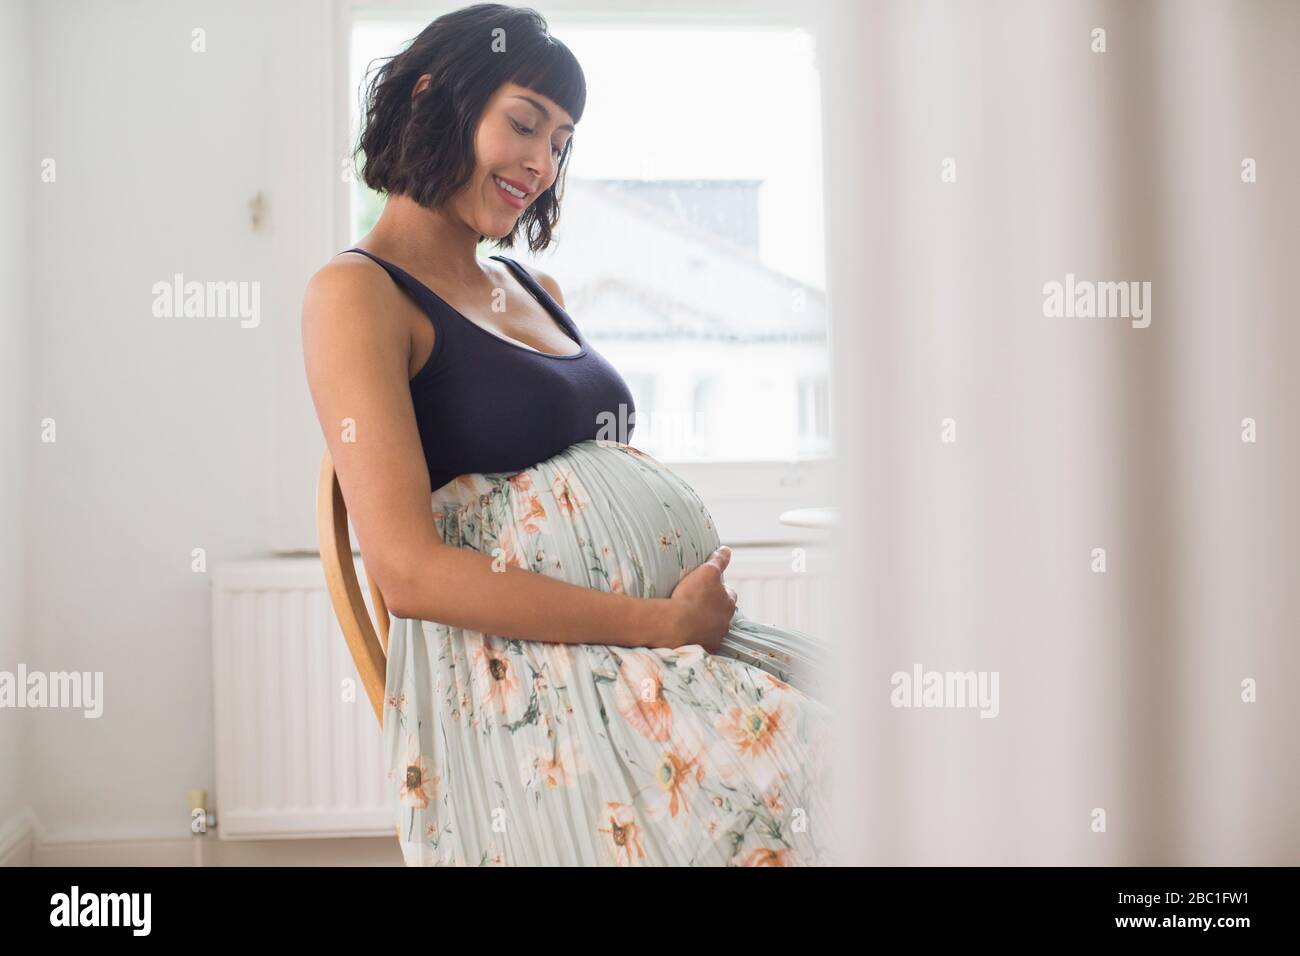 Glückliche schwangere Frau im Blumenkleid, das den Magen hält Stockfoto